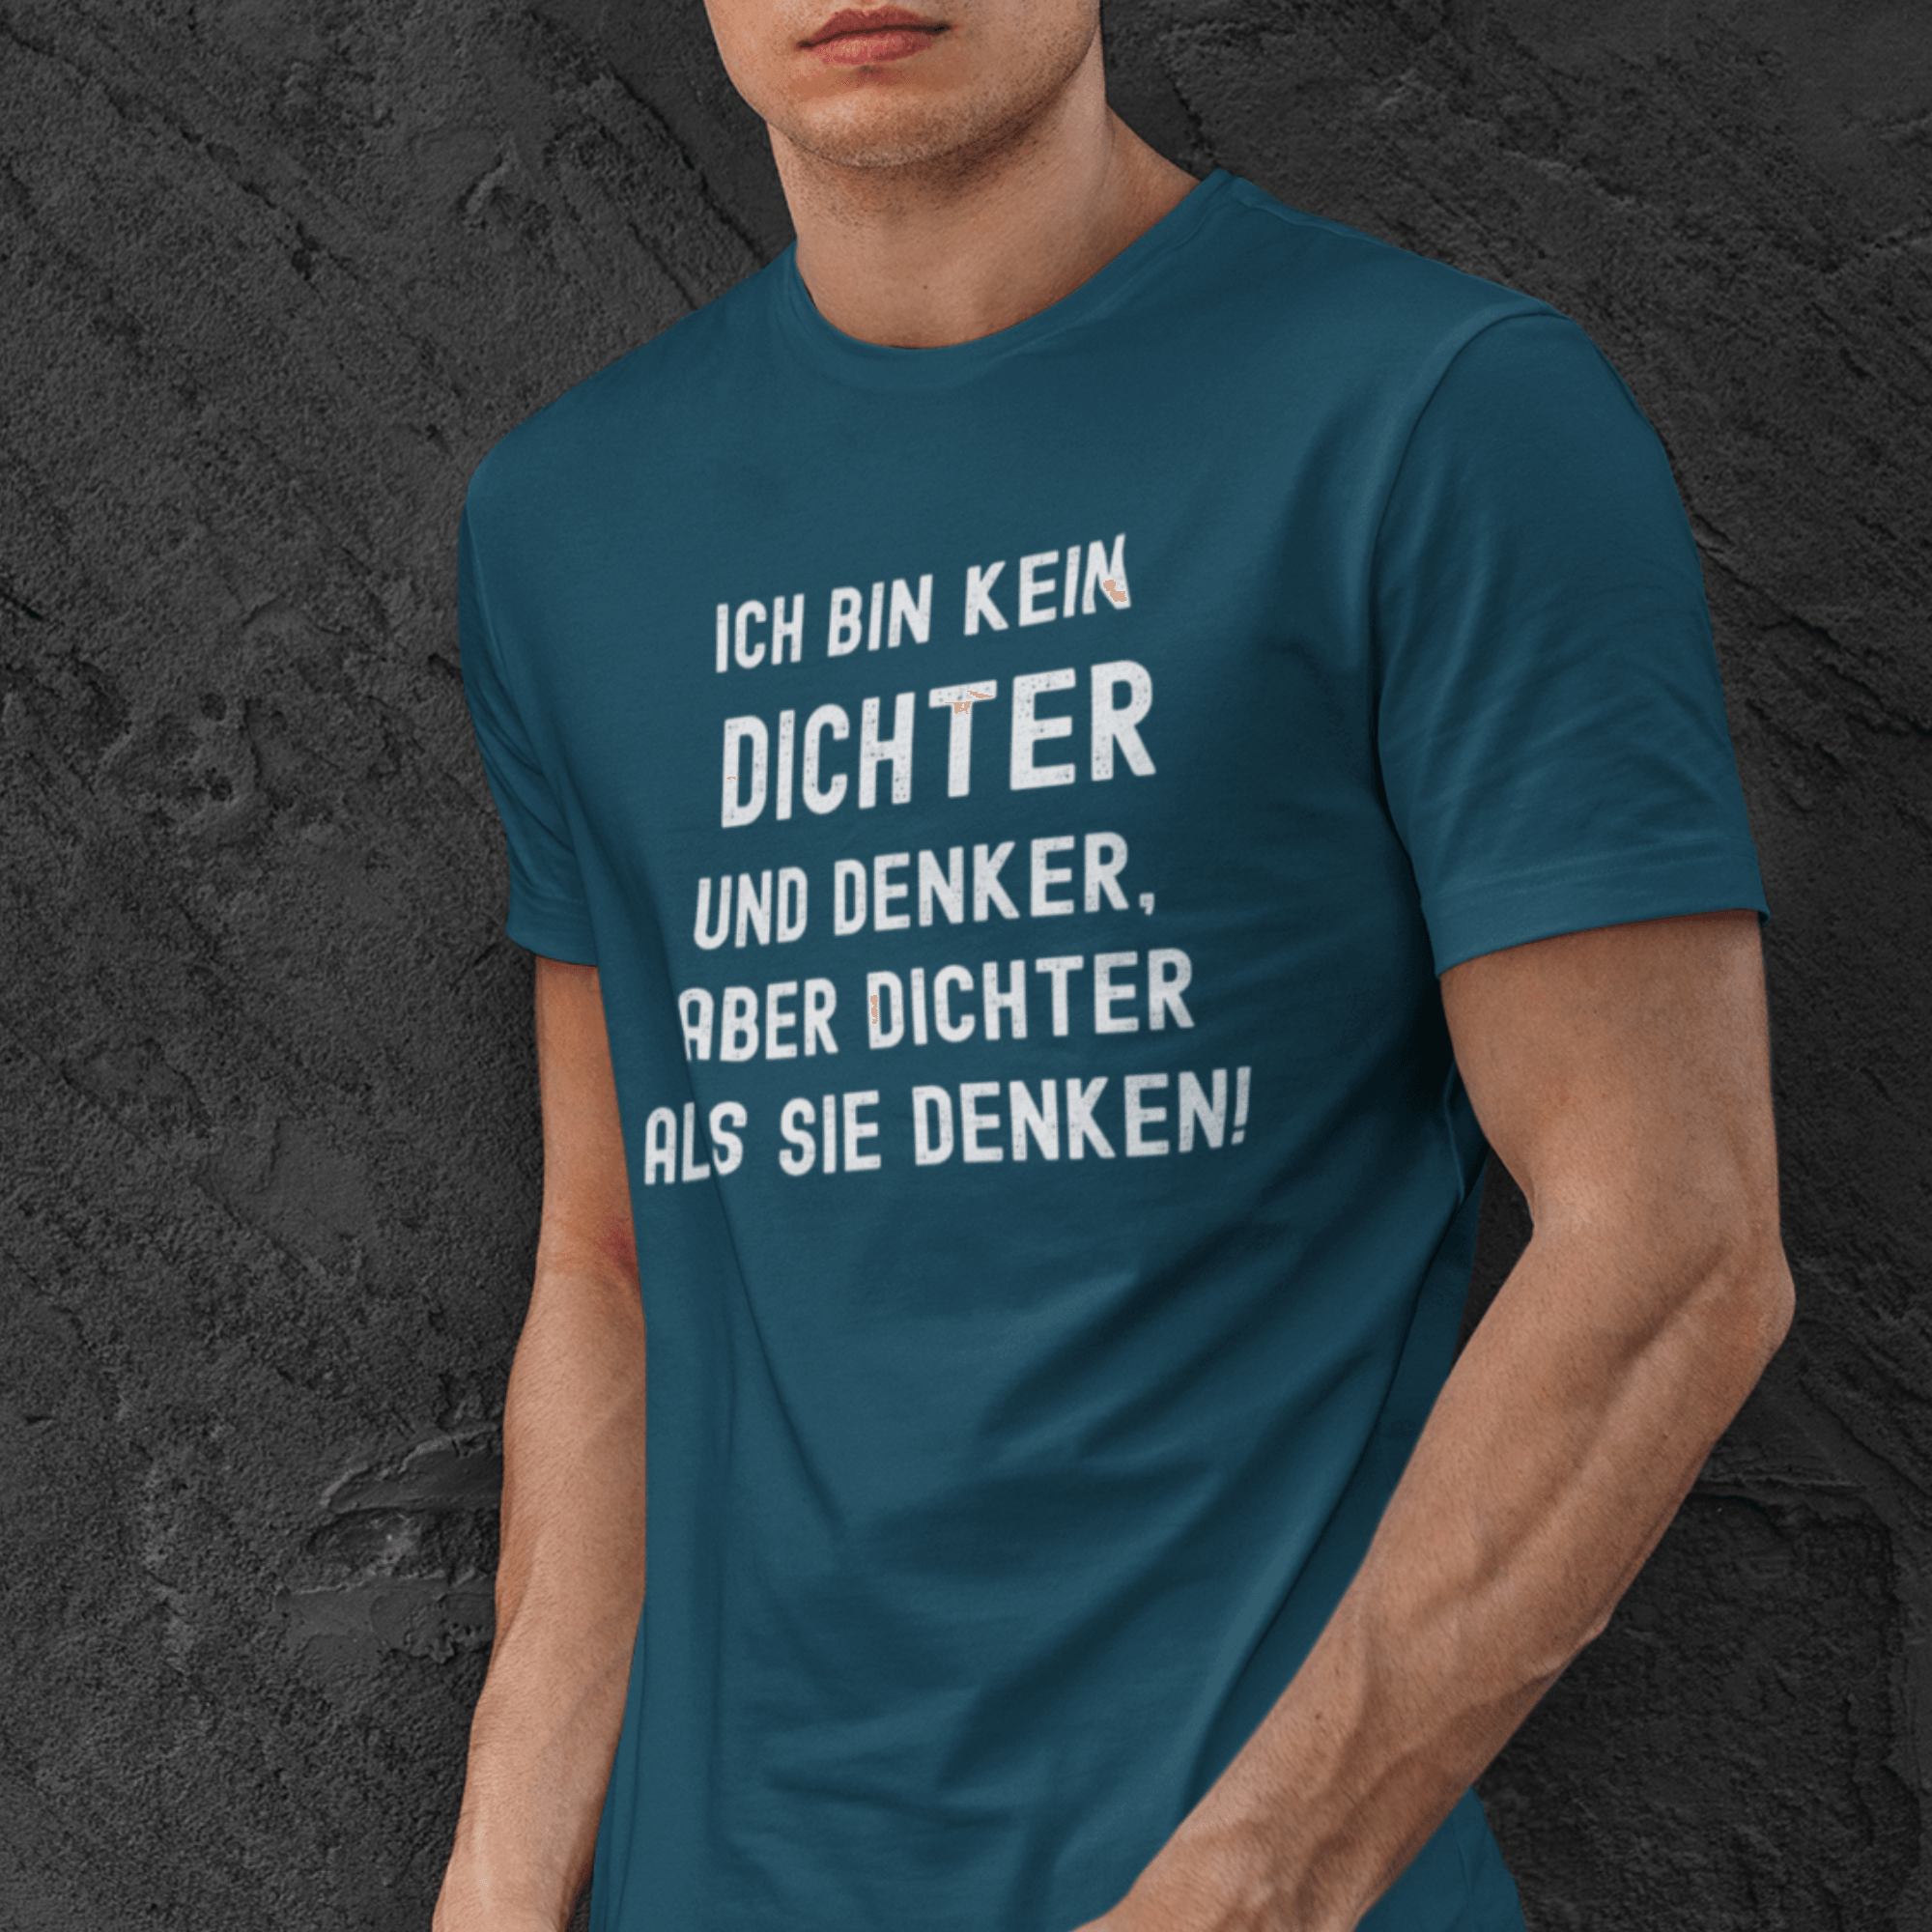 DICHTER UND DENKER - Herren Shirt - einschenken24.de